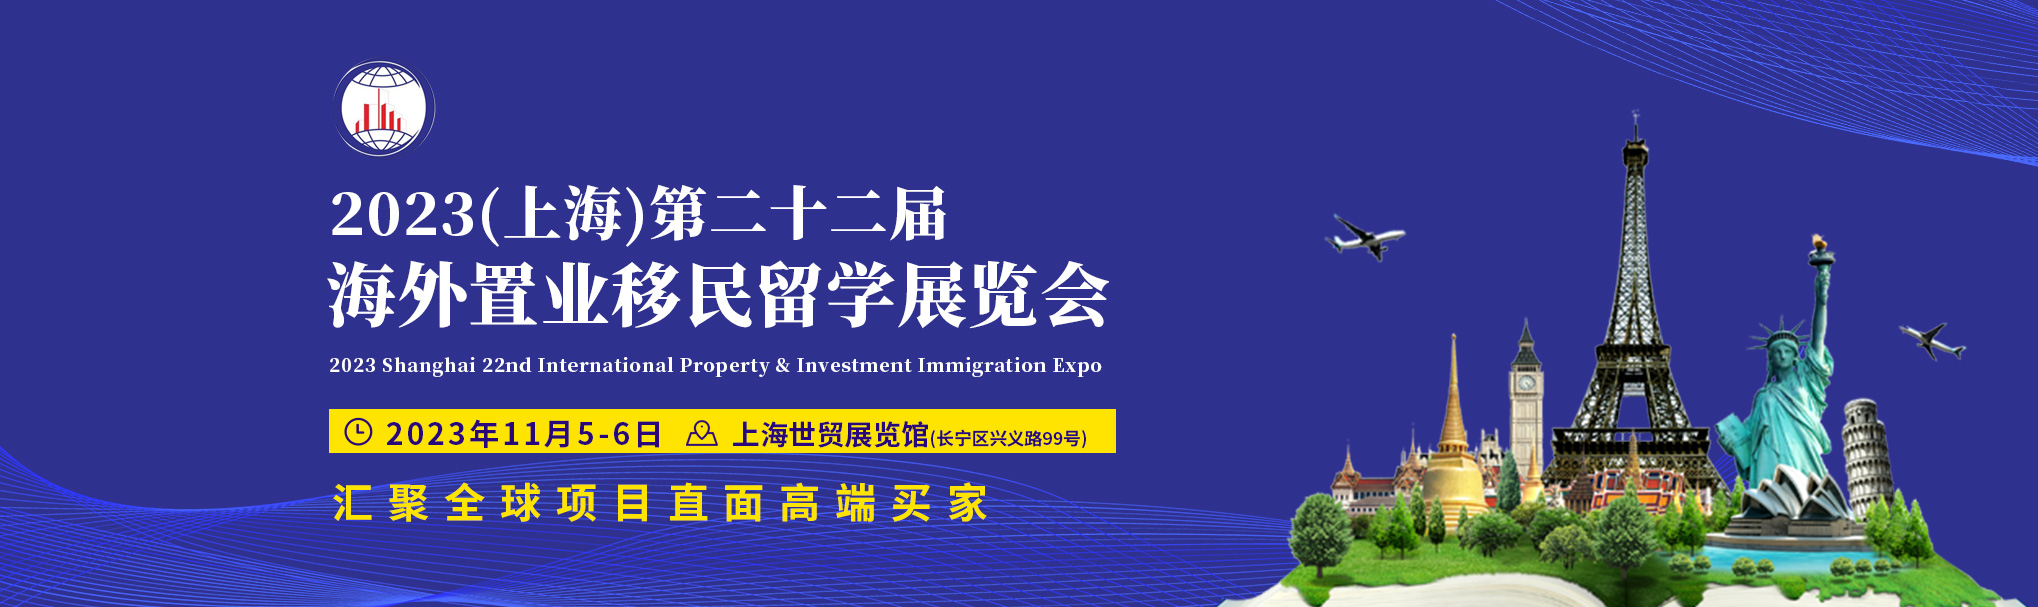 2023年第22届上海海外置业移民展|上海置业展|上海移民展|上海留学展|上海房展|海外置业展|海外移民展|海外留学展|海外房展|上海投资展|海外投资展|